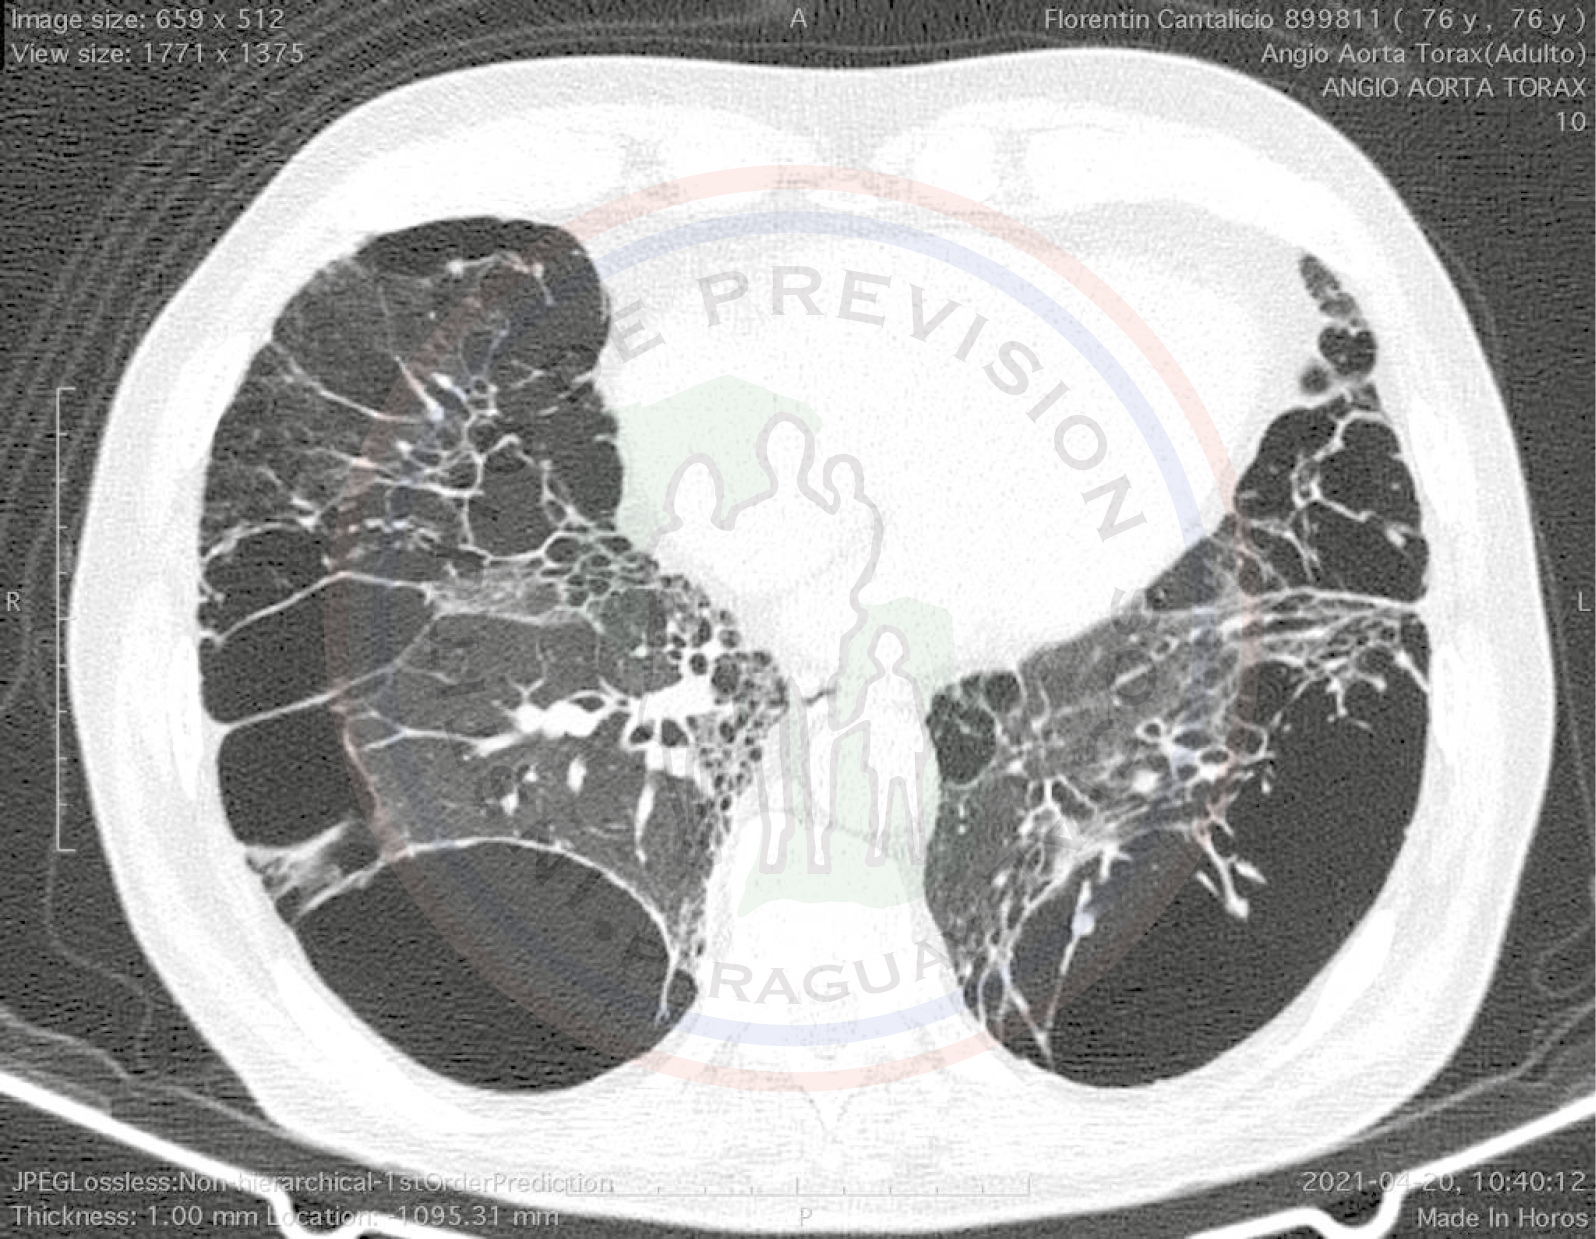 Reparación de aneurisma de aorta abdominal (EVAR) con enfermedad pulmonar severa, exitosa